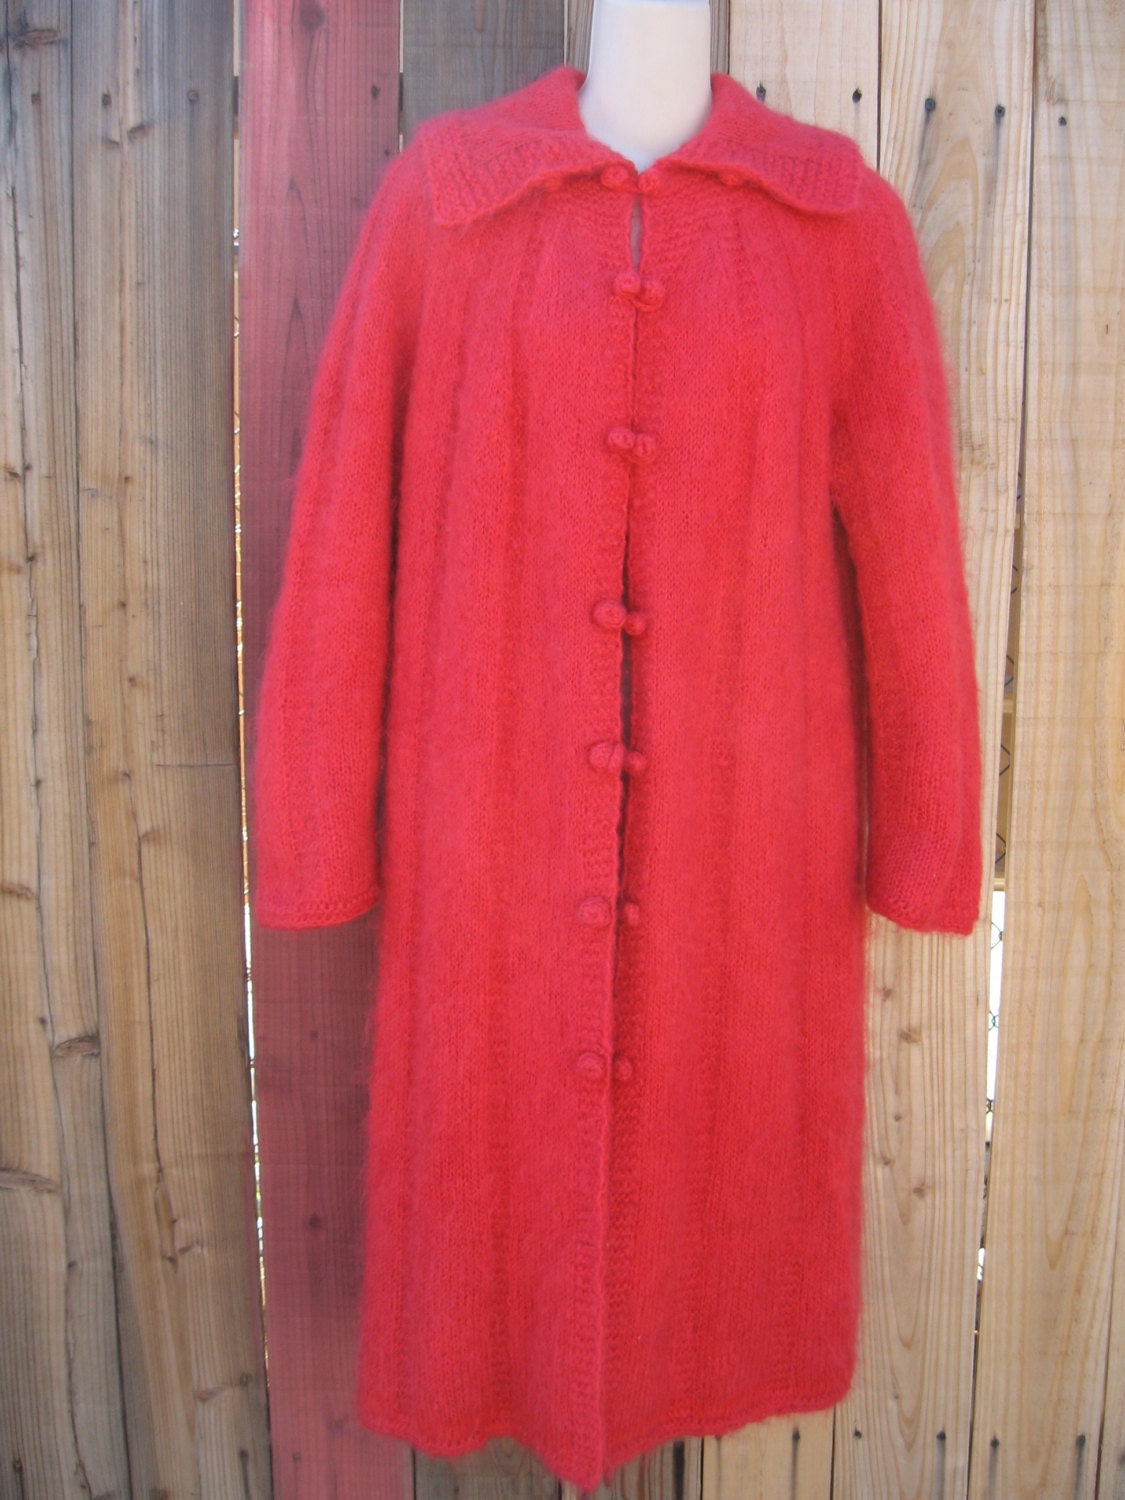 Vintage Hilary Radley Women's Full Length Raglan Sleeve Beige Wool